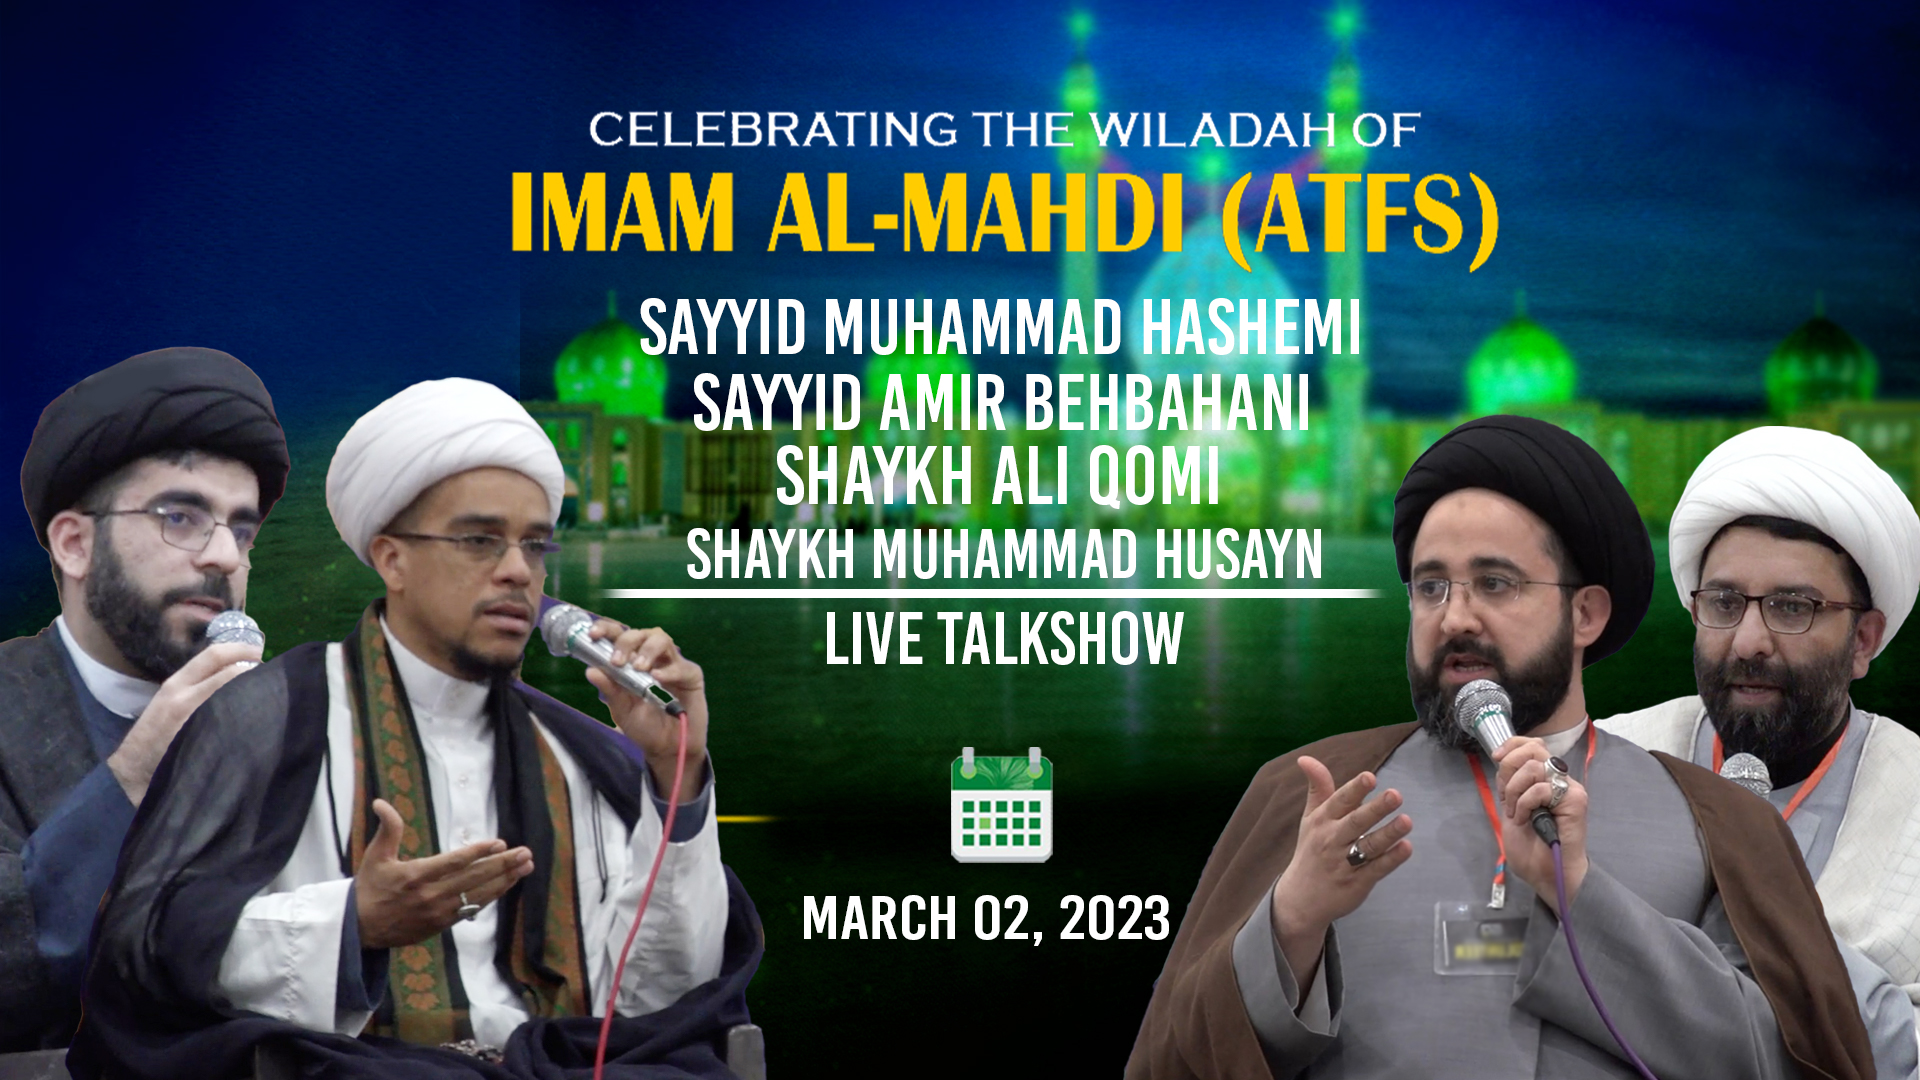 (02March2023) Live Talk Show | Sayyid Muhammad Hashemi, Sayyid Amir Behbahani, Shaykh Ali Qomi, Shaykh Muhammad Husayn | CELEBRATING THE WILADAH OF IMAM AL-MAHDI (ATFS) | English